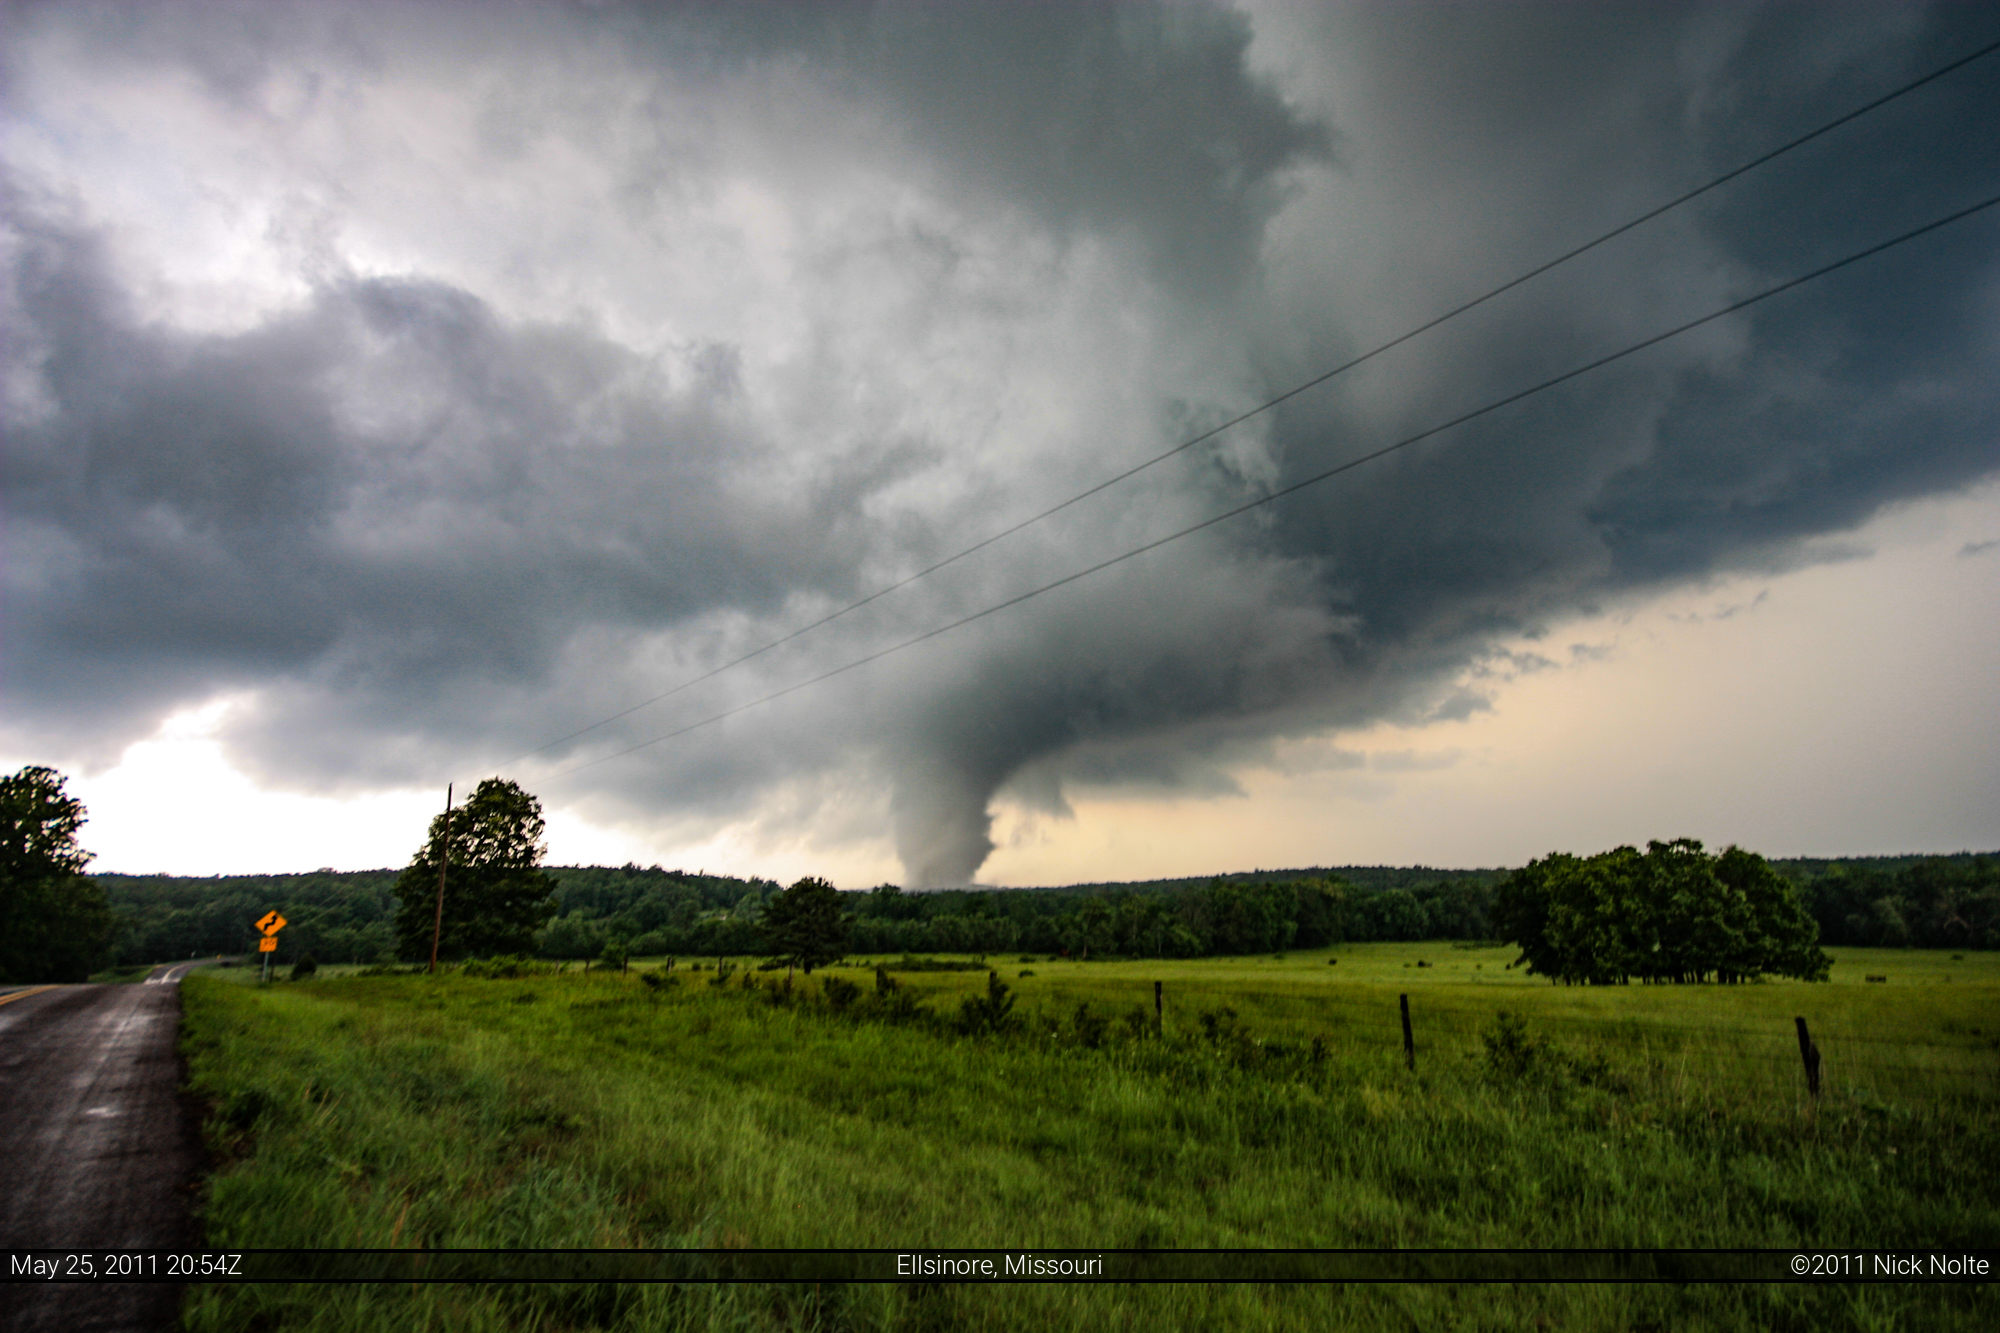 May 25, 2011 Ellsinor, Missouri Tornado NNWX.US